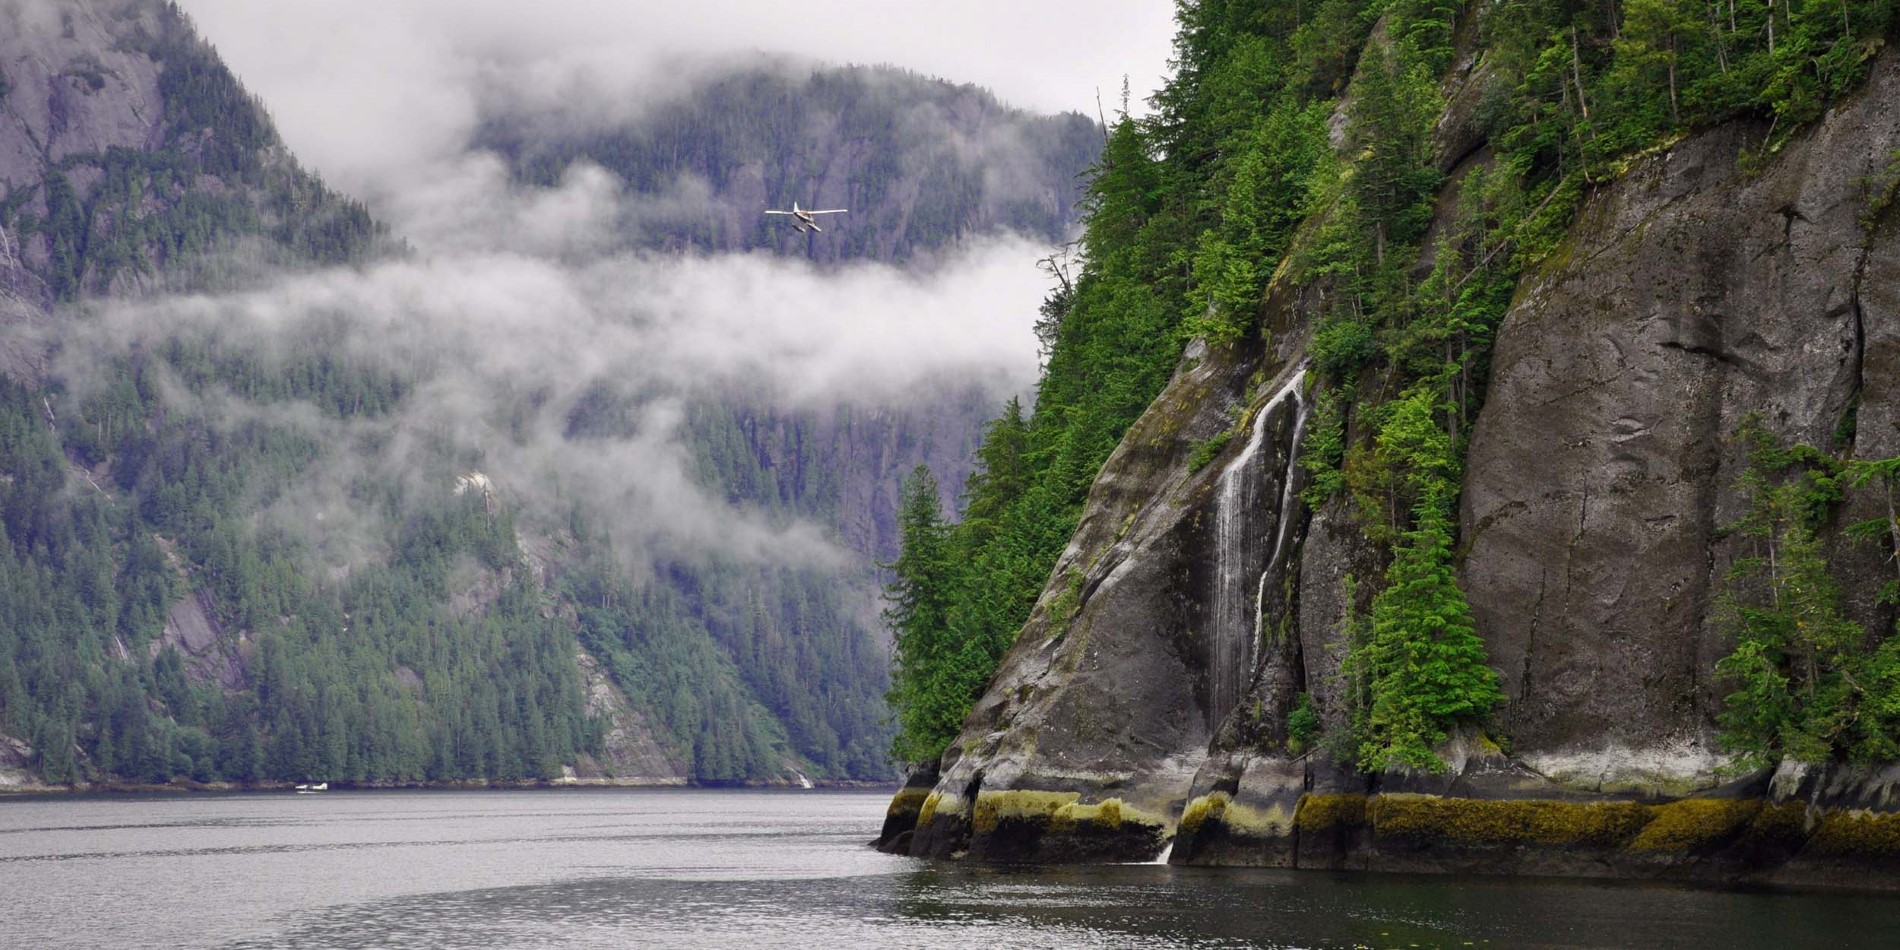 Erkunden Sie die geheimnisvolle Schönheit des Fjords.